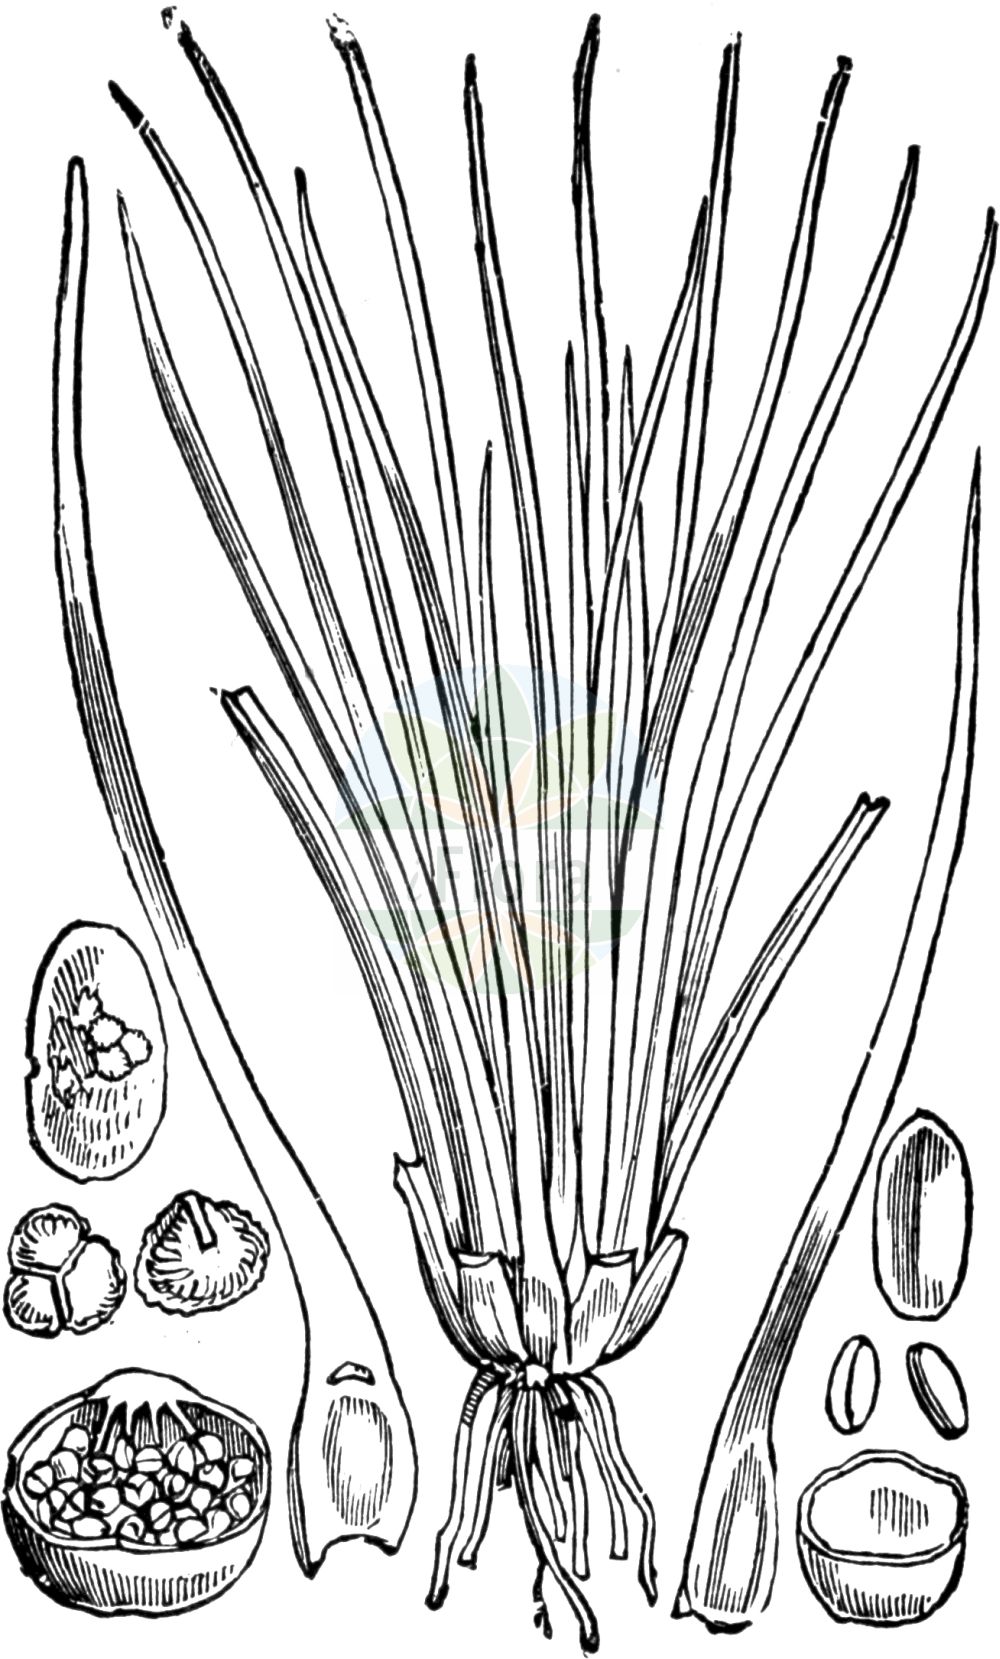 Historische Abbildung von Isoetes lacustris (See-Brachsenkraut - Quillwort). Das Bild zeigt Blatt, Bluete, Frucht und Same. ---- Historical Drawing of Isoetes lacustris (See-Brachsenkraut - Quillwort). The image is showing leaf, flower, fruit and seed.(Isoetes lacustris,See-Brachsenkraut,Quillwort,Isoetes brochonii,Isoetes lacustris,See-Brachsenkraut,Quillwort,Lake Quillwort,Common Quillwort,Isoetes,Brachsenkraut,Quillwort,Isoetaceae,Brachsenkräuter,Quillwort family,Blatt,Bluete,Frucht,Same,leaf,flower,fruit,seed,Fitch et al. (1880))